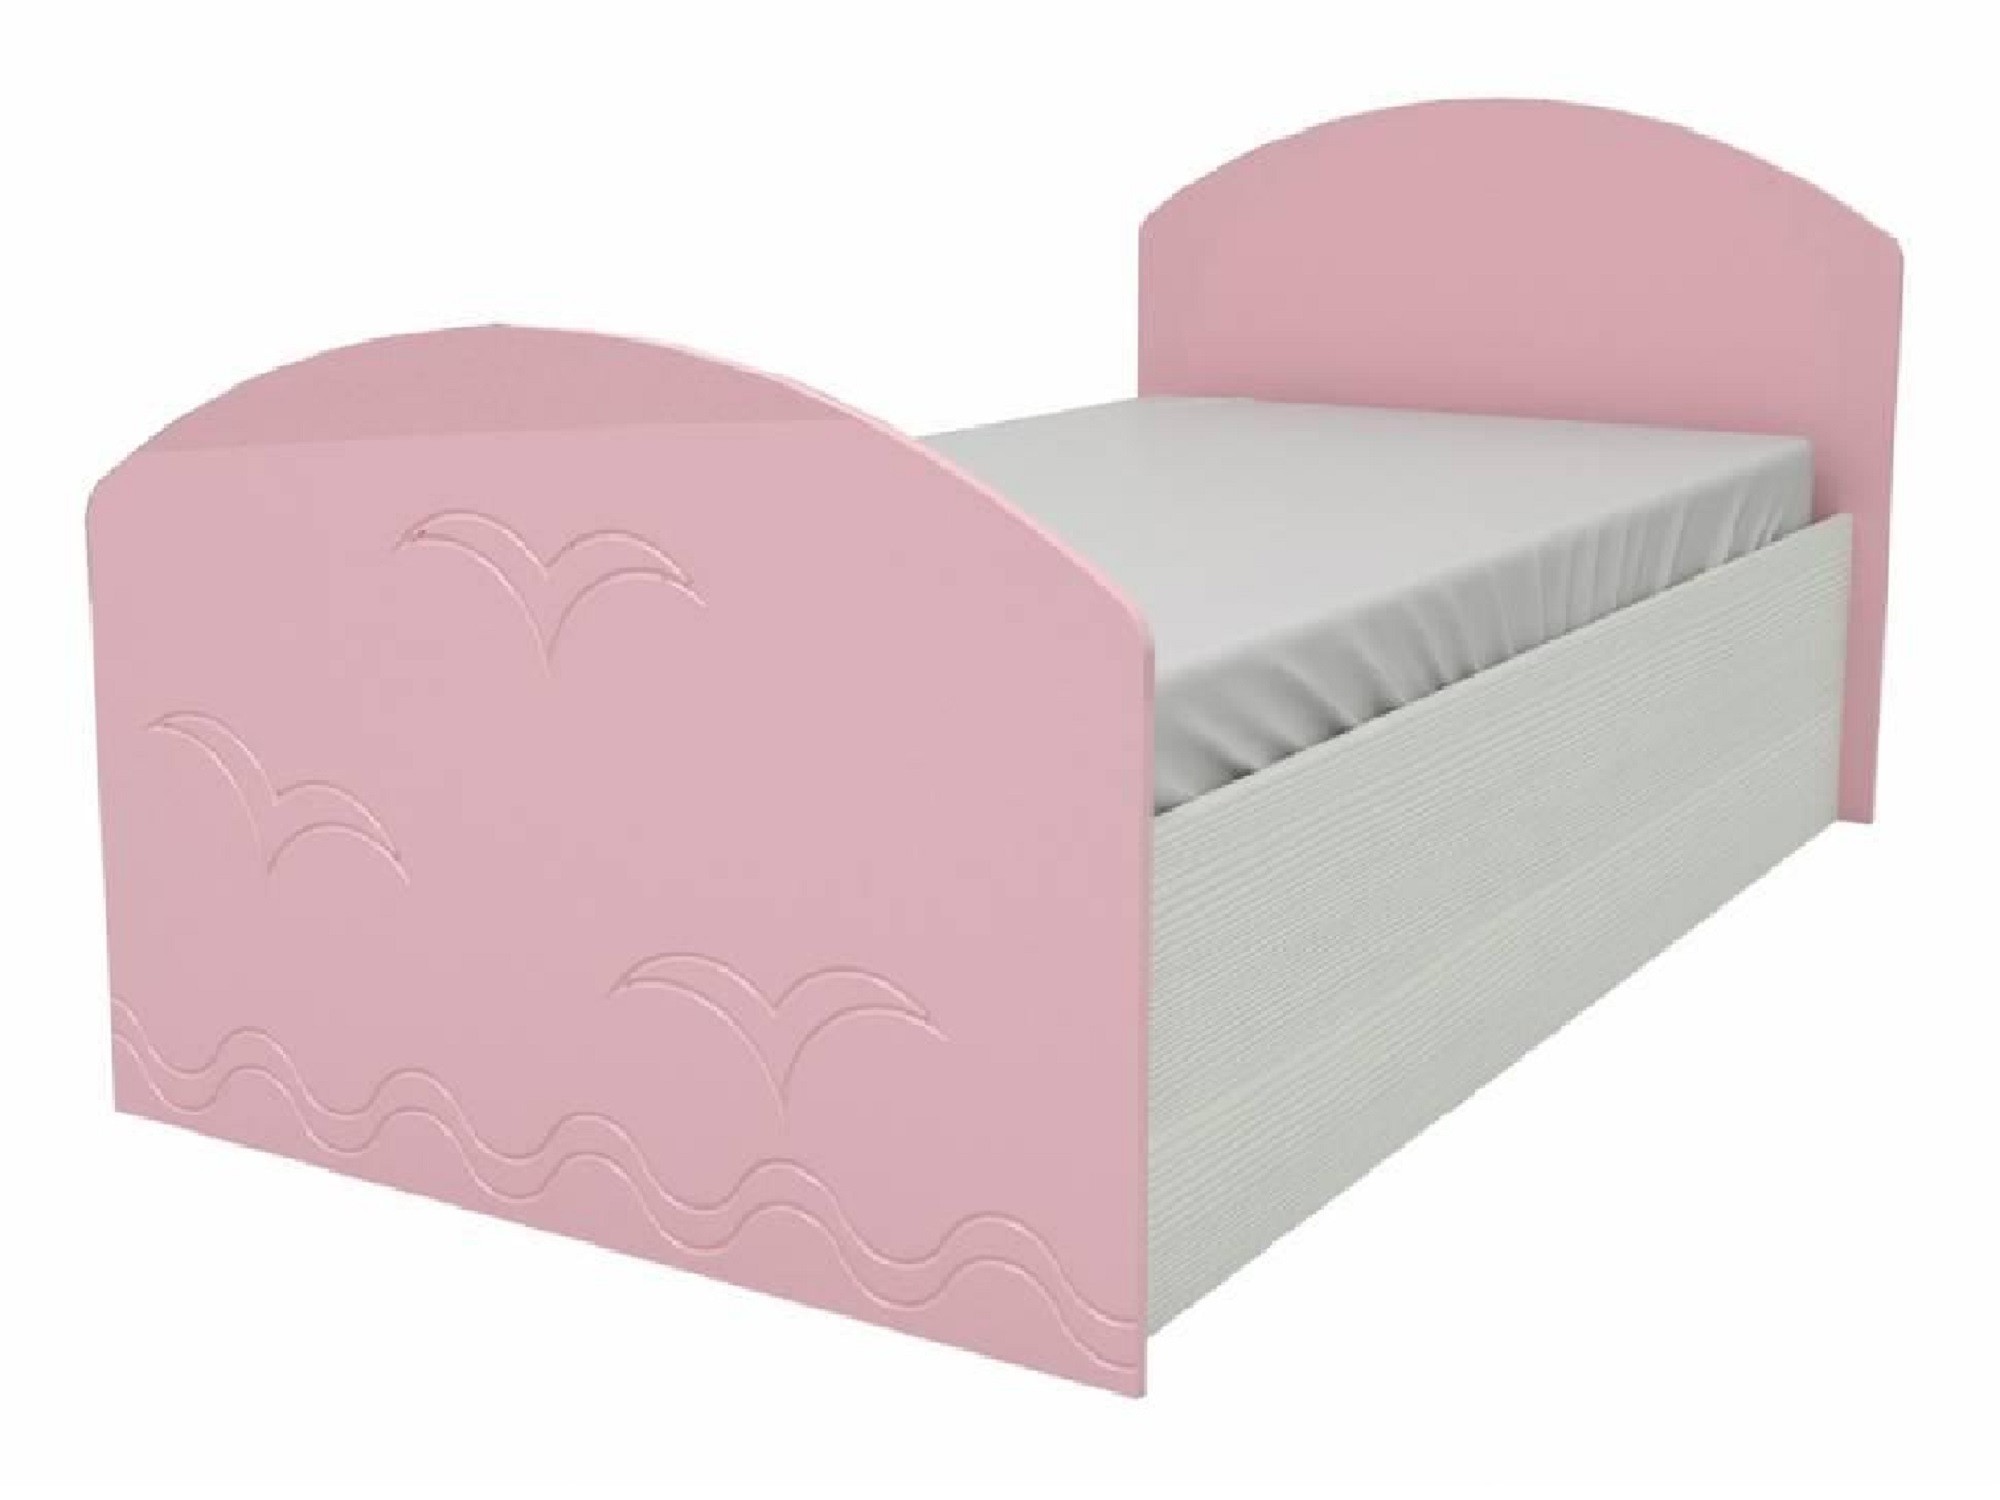 Юниор-2 Детская кровать 80, металлик (Розовый металлик, Дуб белёный) Дуб белёный, МДФ, ЛДСП юниор 1 двухъярусная кровать 80 бирюза металлик дуб белёный зеленый лдсп